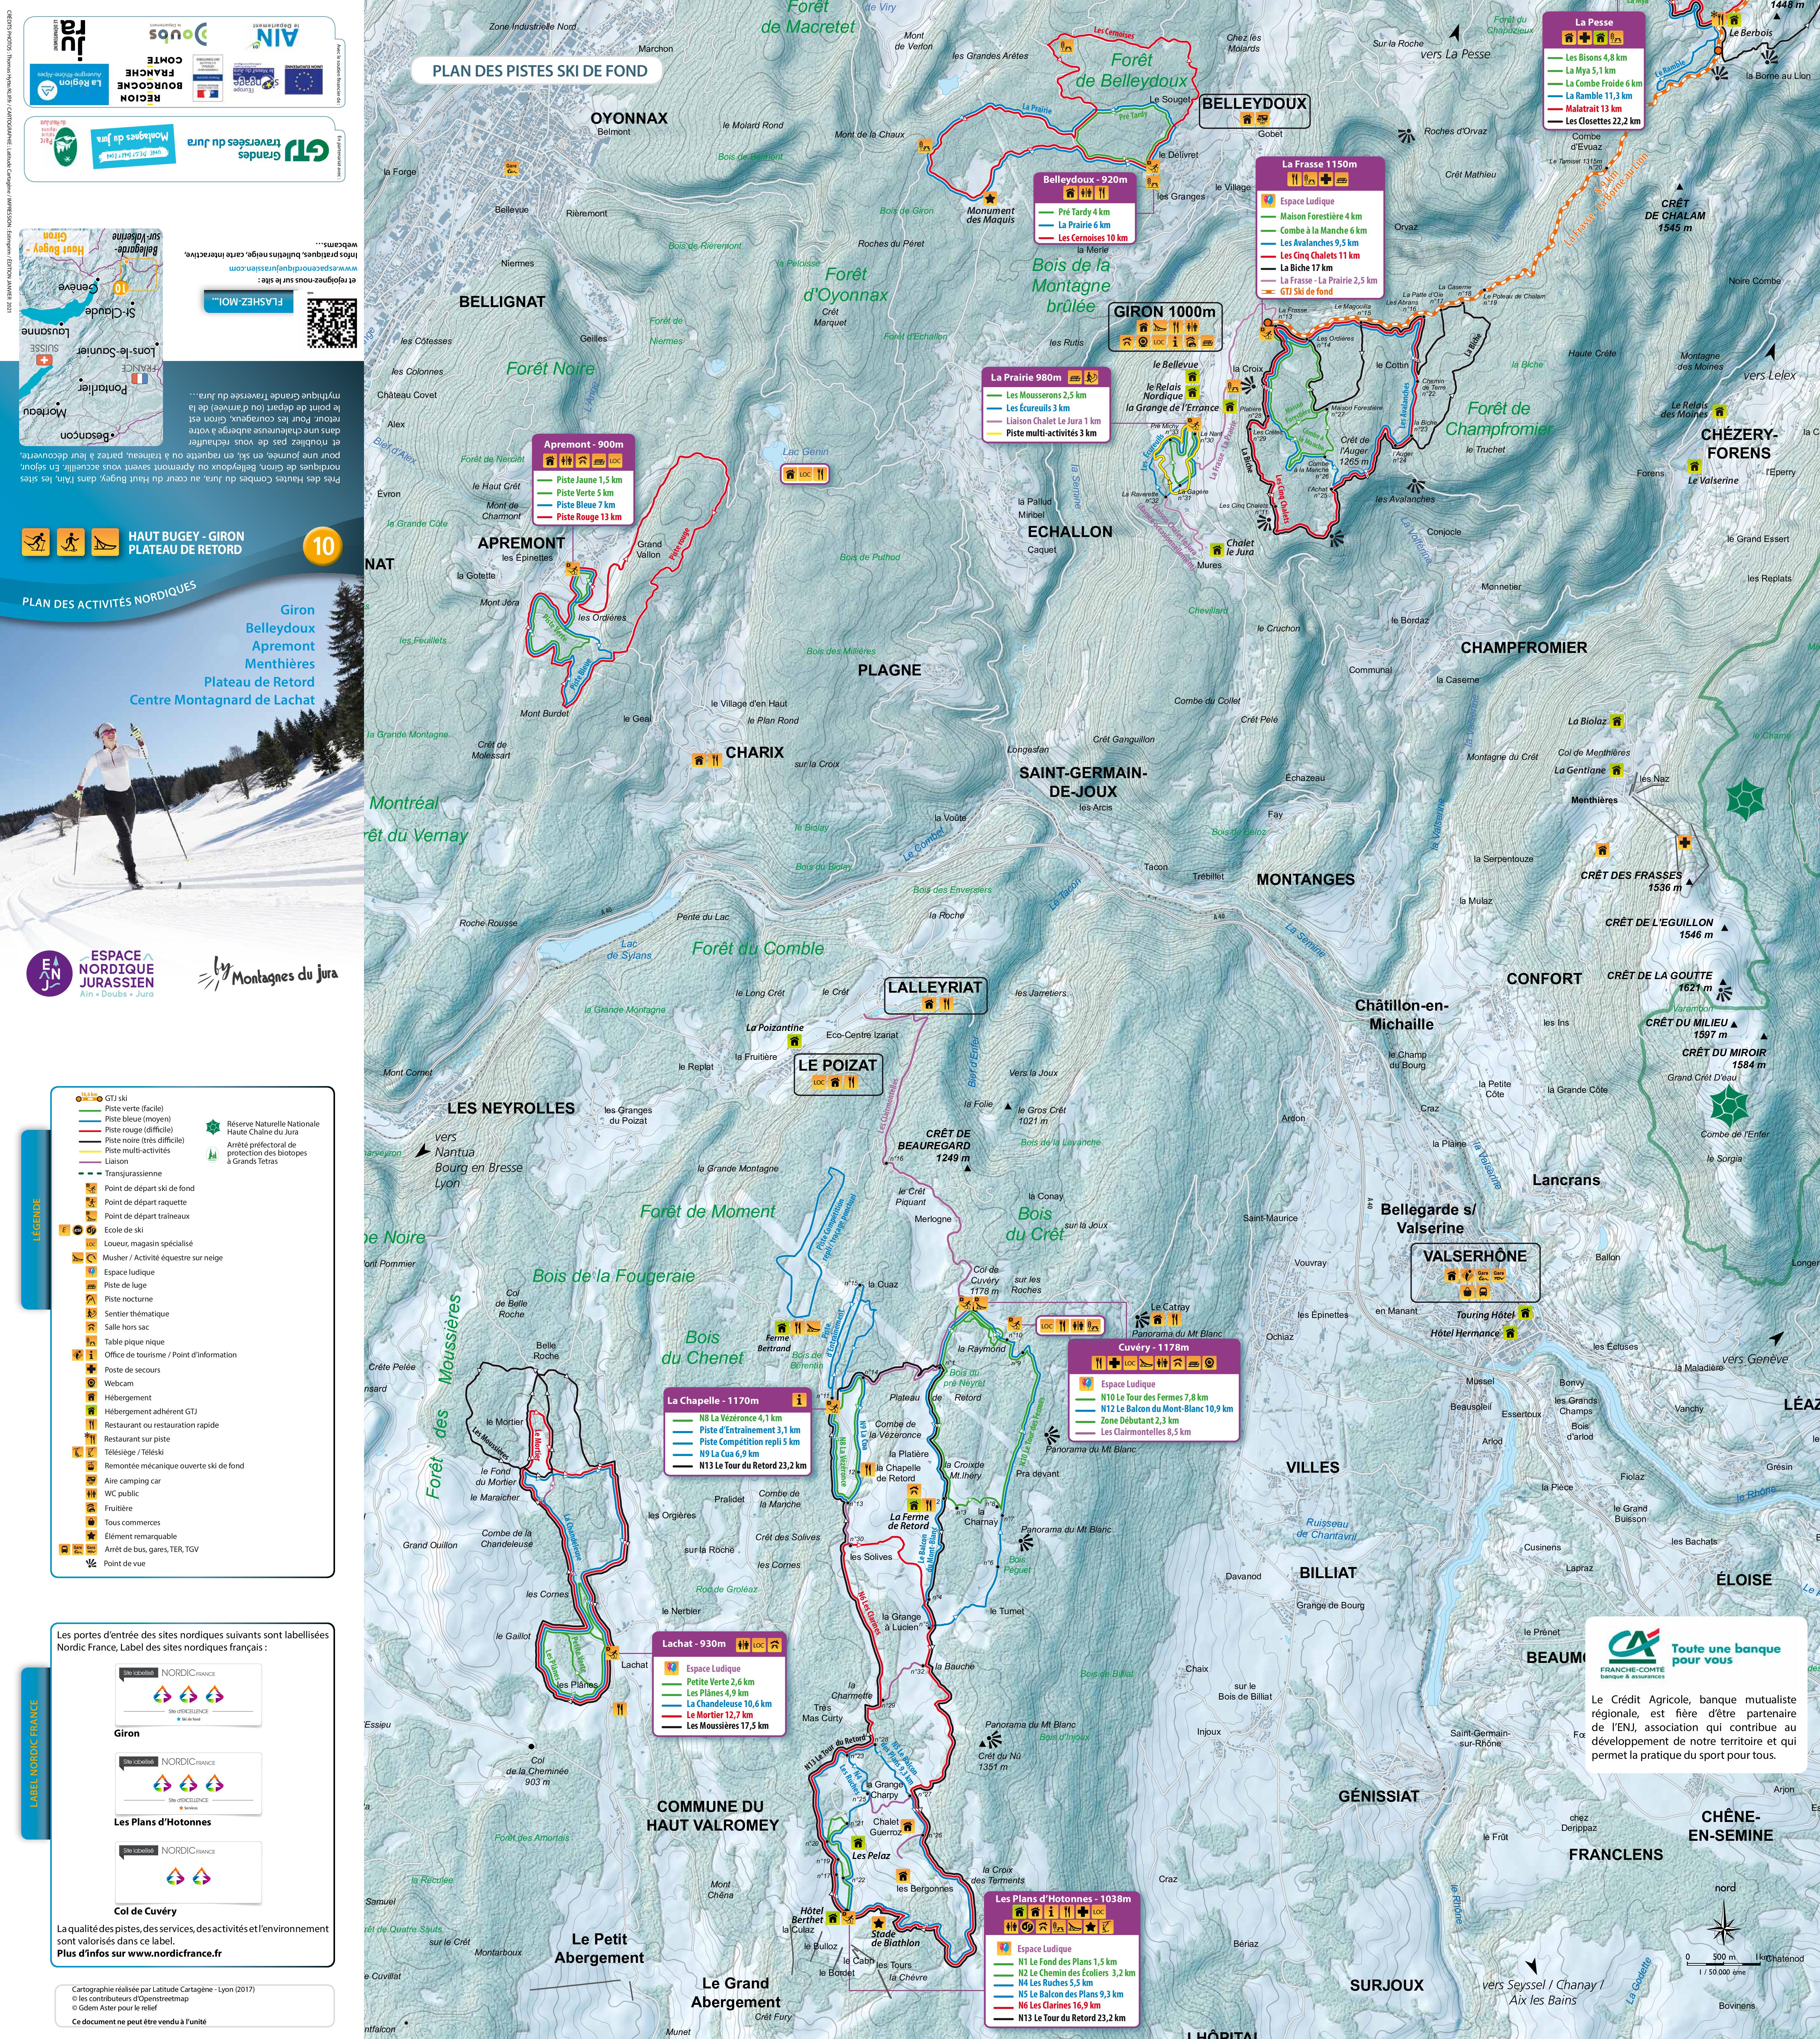 Plan de pistes ski de fond Plateau de Retord Lachat